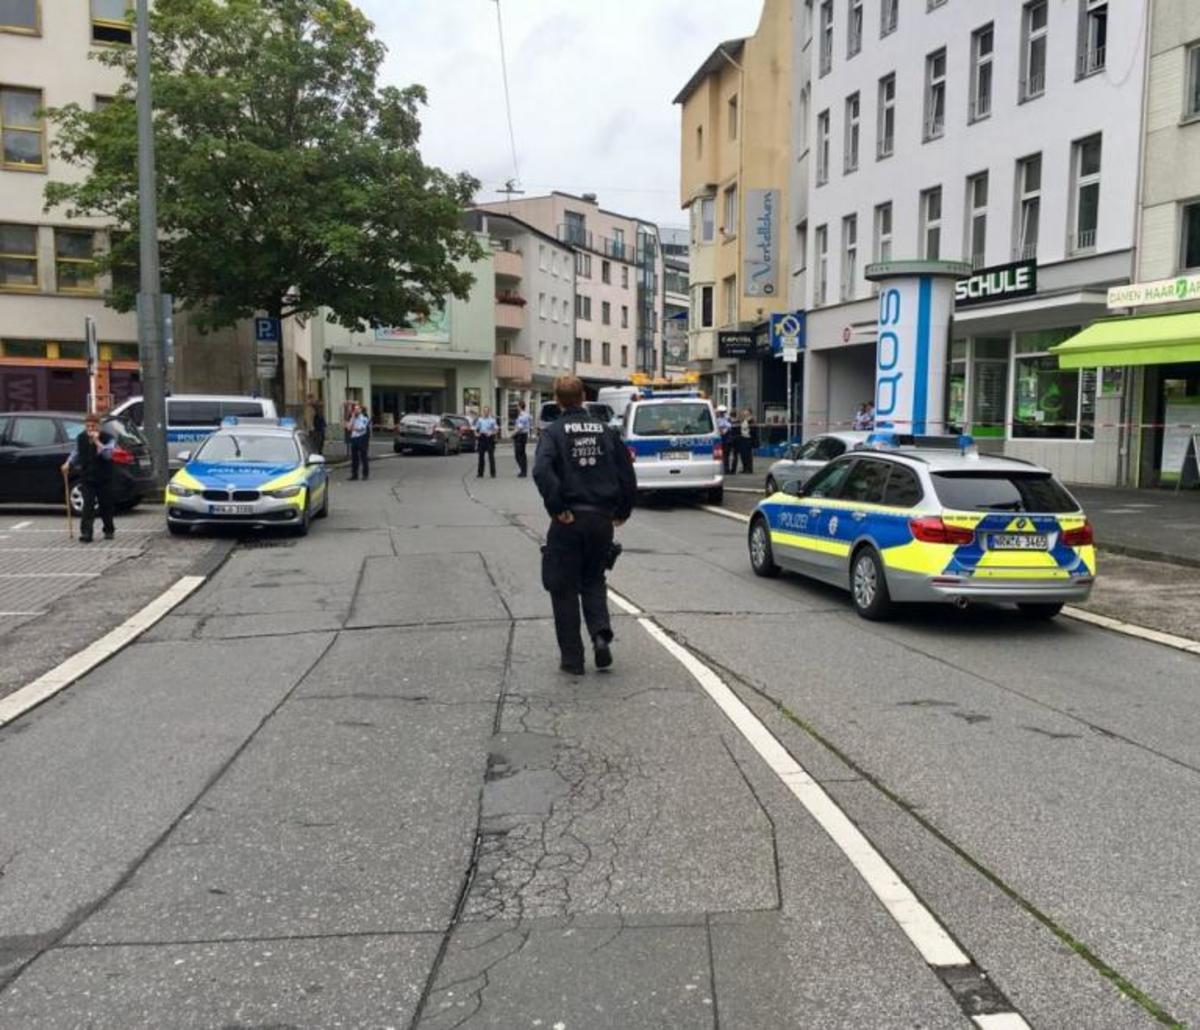 Τρόμος στο Μόναχο! Μαχαίρωσε και σκότωσε μία γυναίκα – “Χαροπαλεύει” άλλη μια